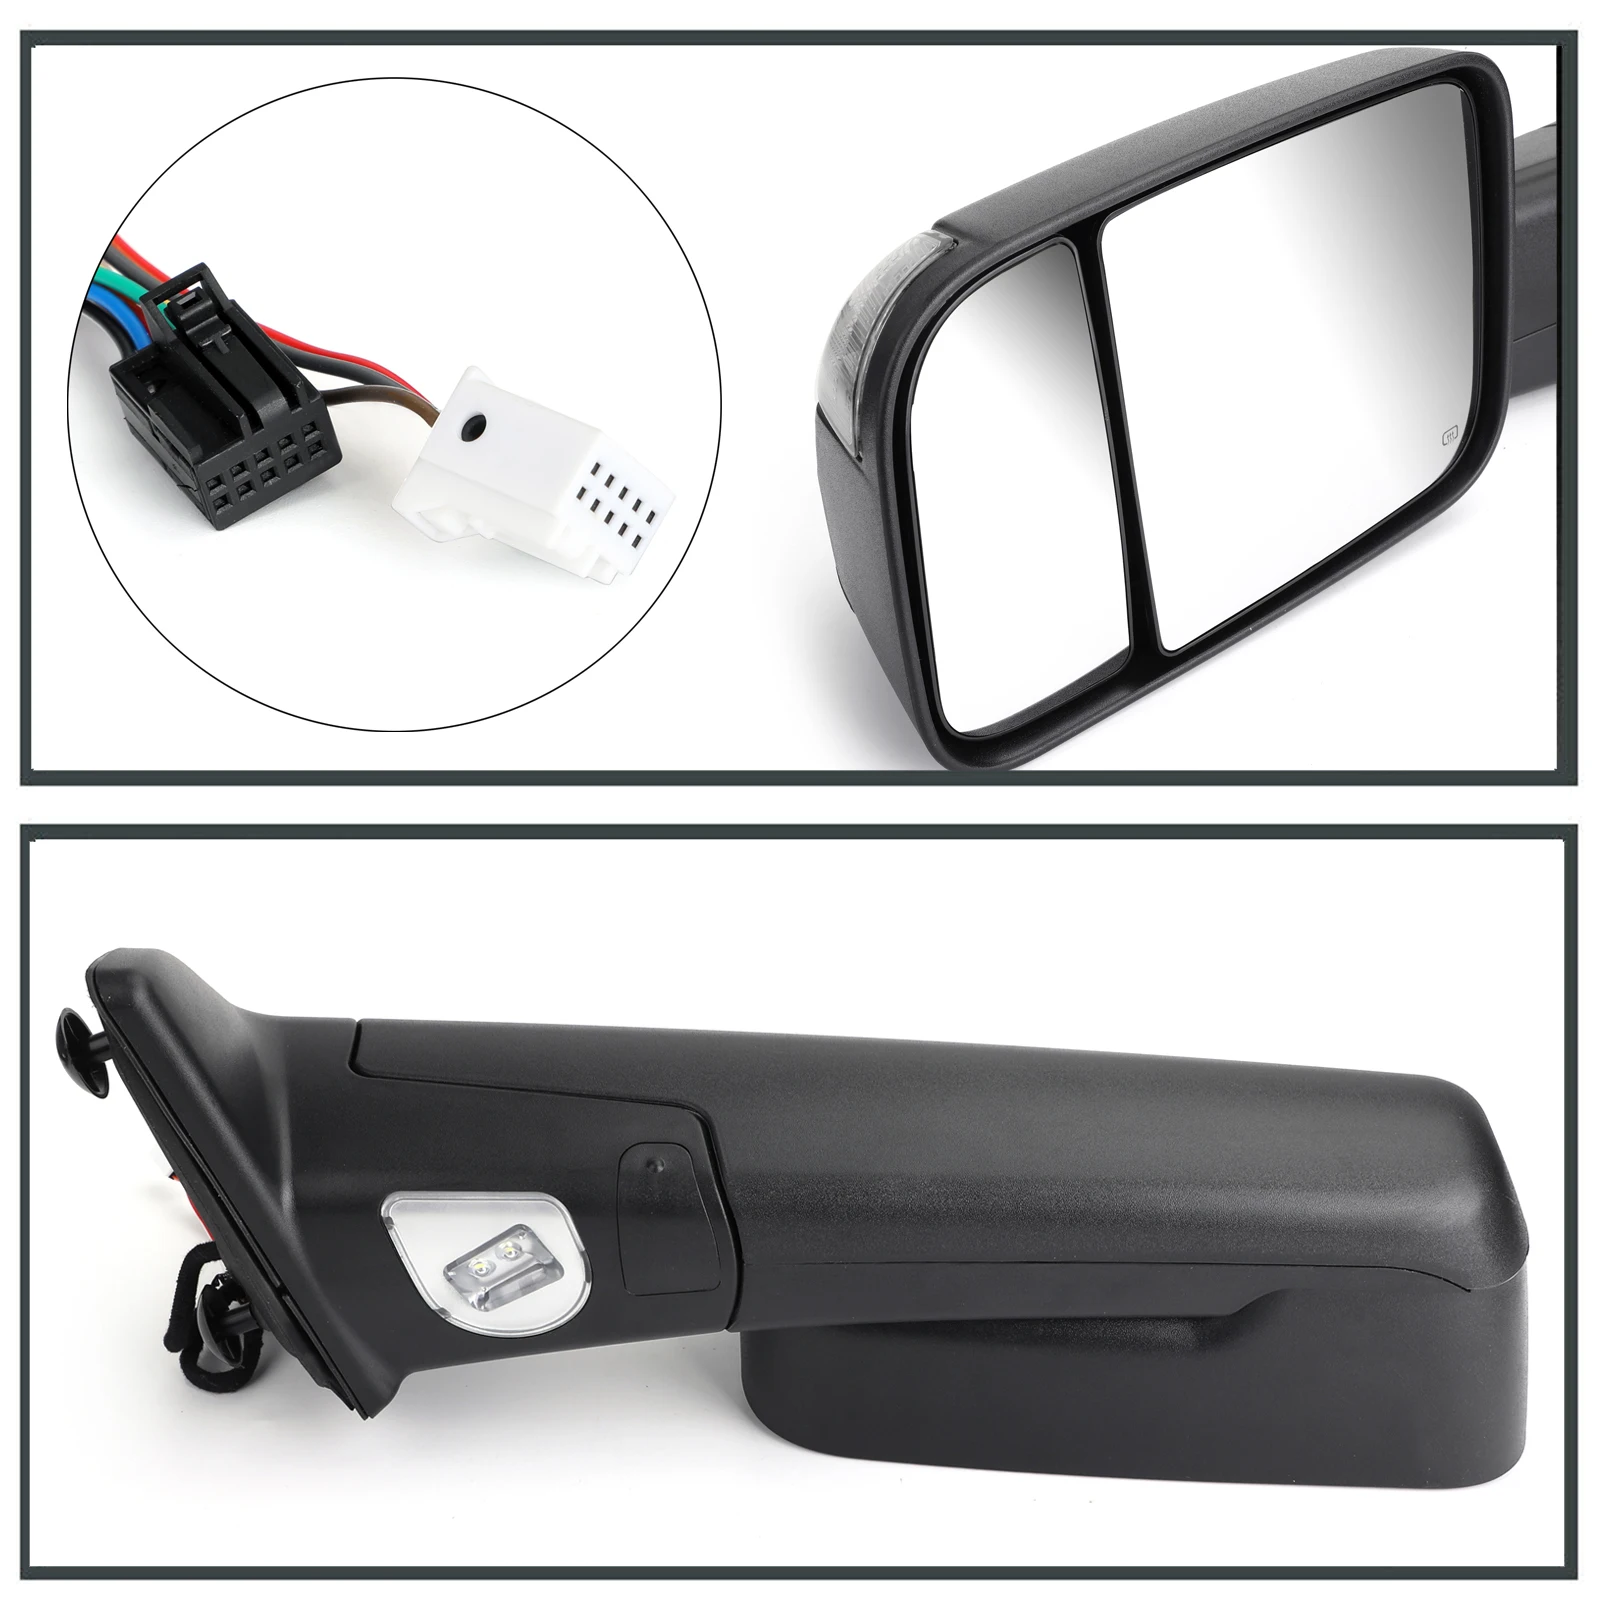 Areyourshop мощность с подогревом буксировочные зеркала светодиодный сигнал поворота+ лампа нижней подсветки двери для Dodge Ram 1500 09-12 автомобильные аксессуары для зеркал